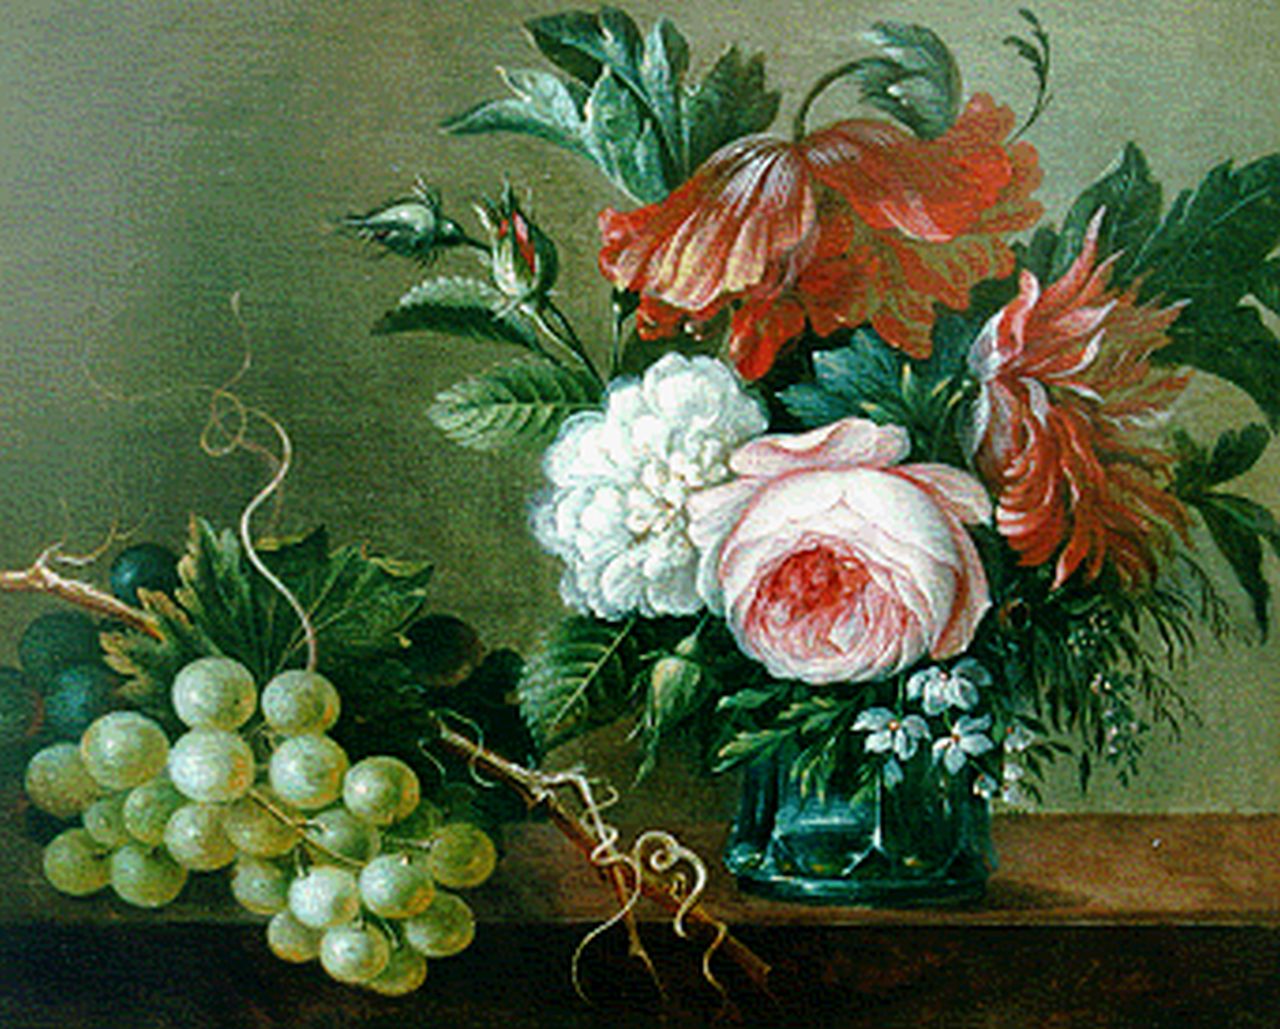 Apol A.  | Adrianus Apol, Stilleven van bloemen en druiven, olieverf op paneel 22,9 x 28,3 cm, gesigneerd rechtsonder en gedateerd 1845